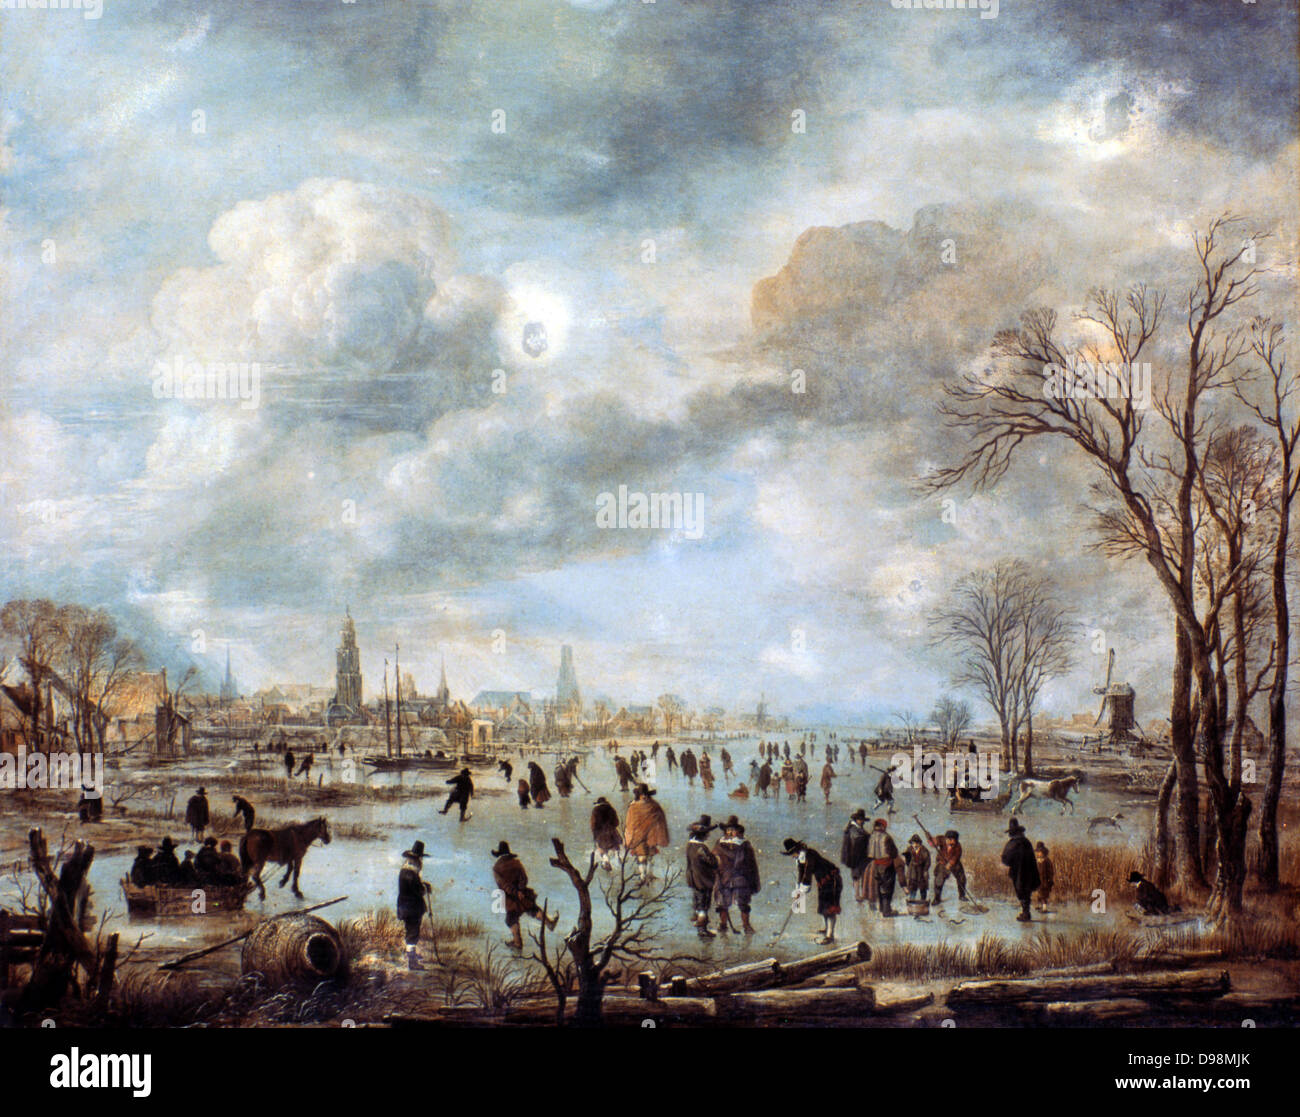 Fluss Szene im Winter 'c 1660. Öl auf Leinwand. Aert van der Neer (c 1603-1677) holländische Maler. Gefrorene Landschaft mit skatern, von Pferden gezogenen Schlitten, Männer spielen ice Golf/Hockey auf dem Fluss. Stockfoto